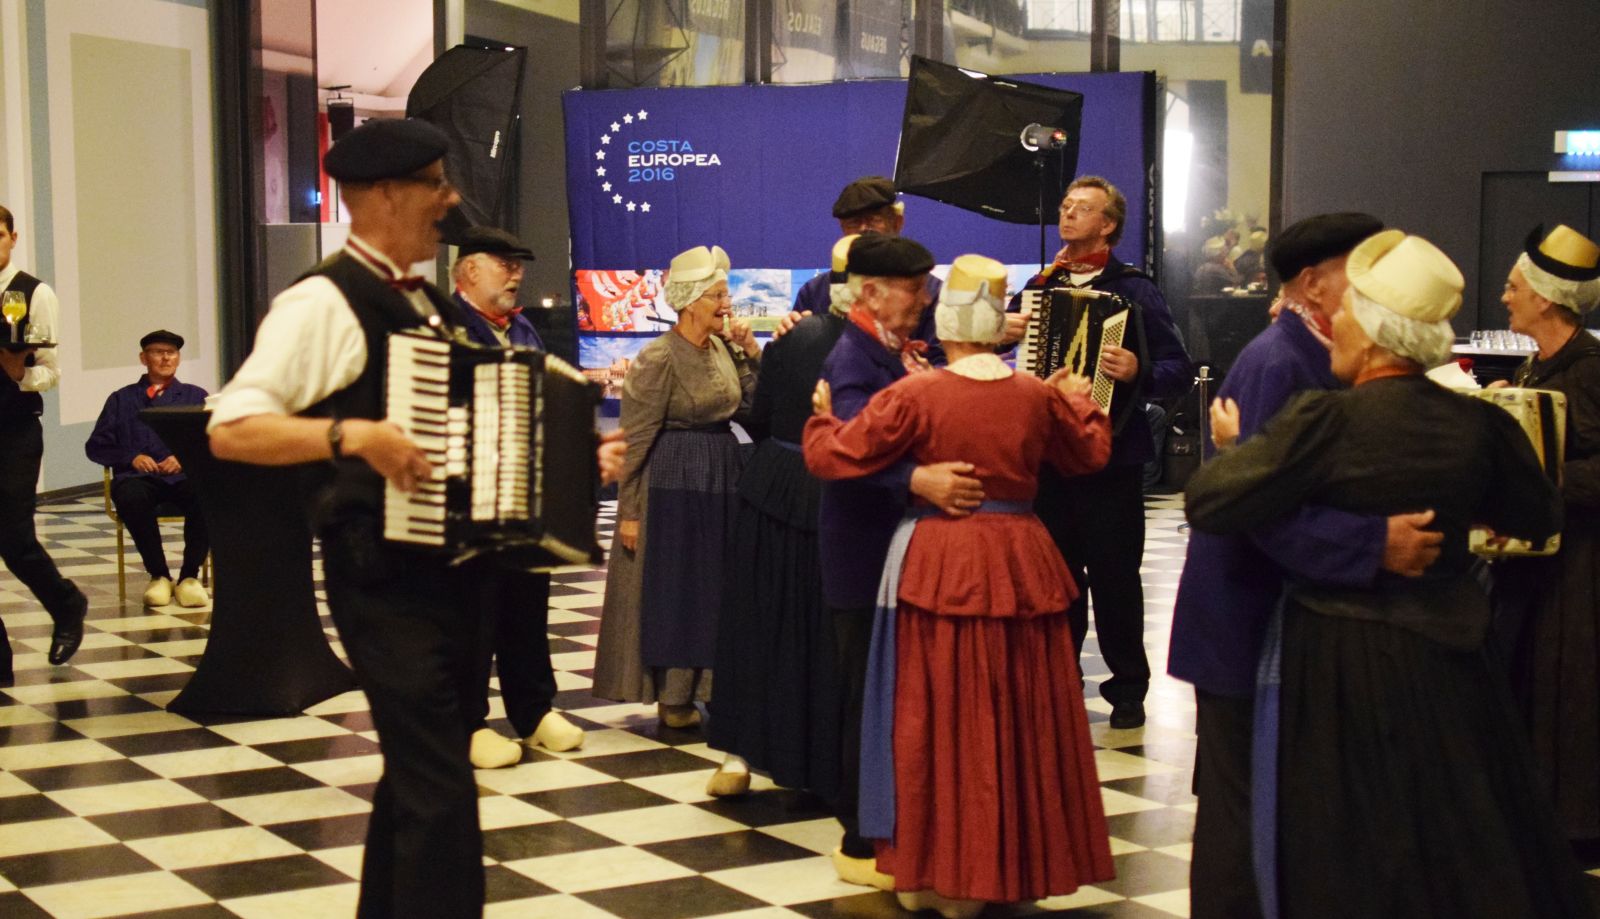 Amsterdam Accordeonist Huren Gezocht Aangeboden Inhuren biedt zich aan voor feestjes, accordeonmuziek live